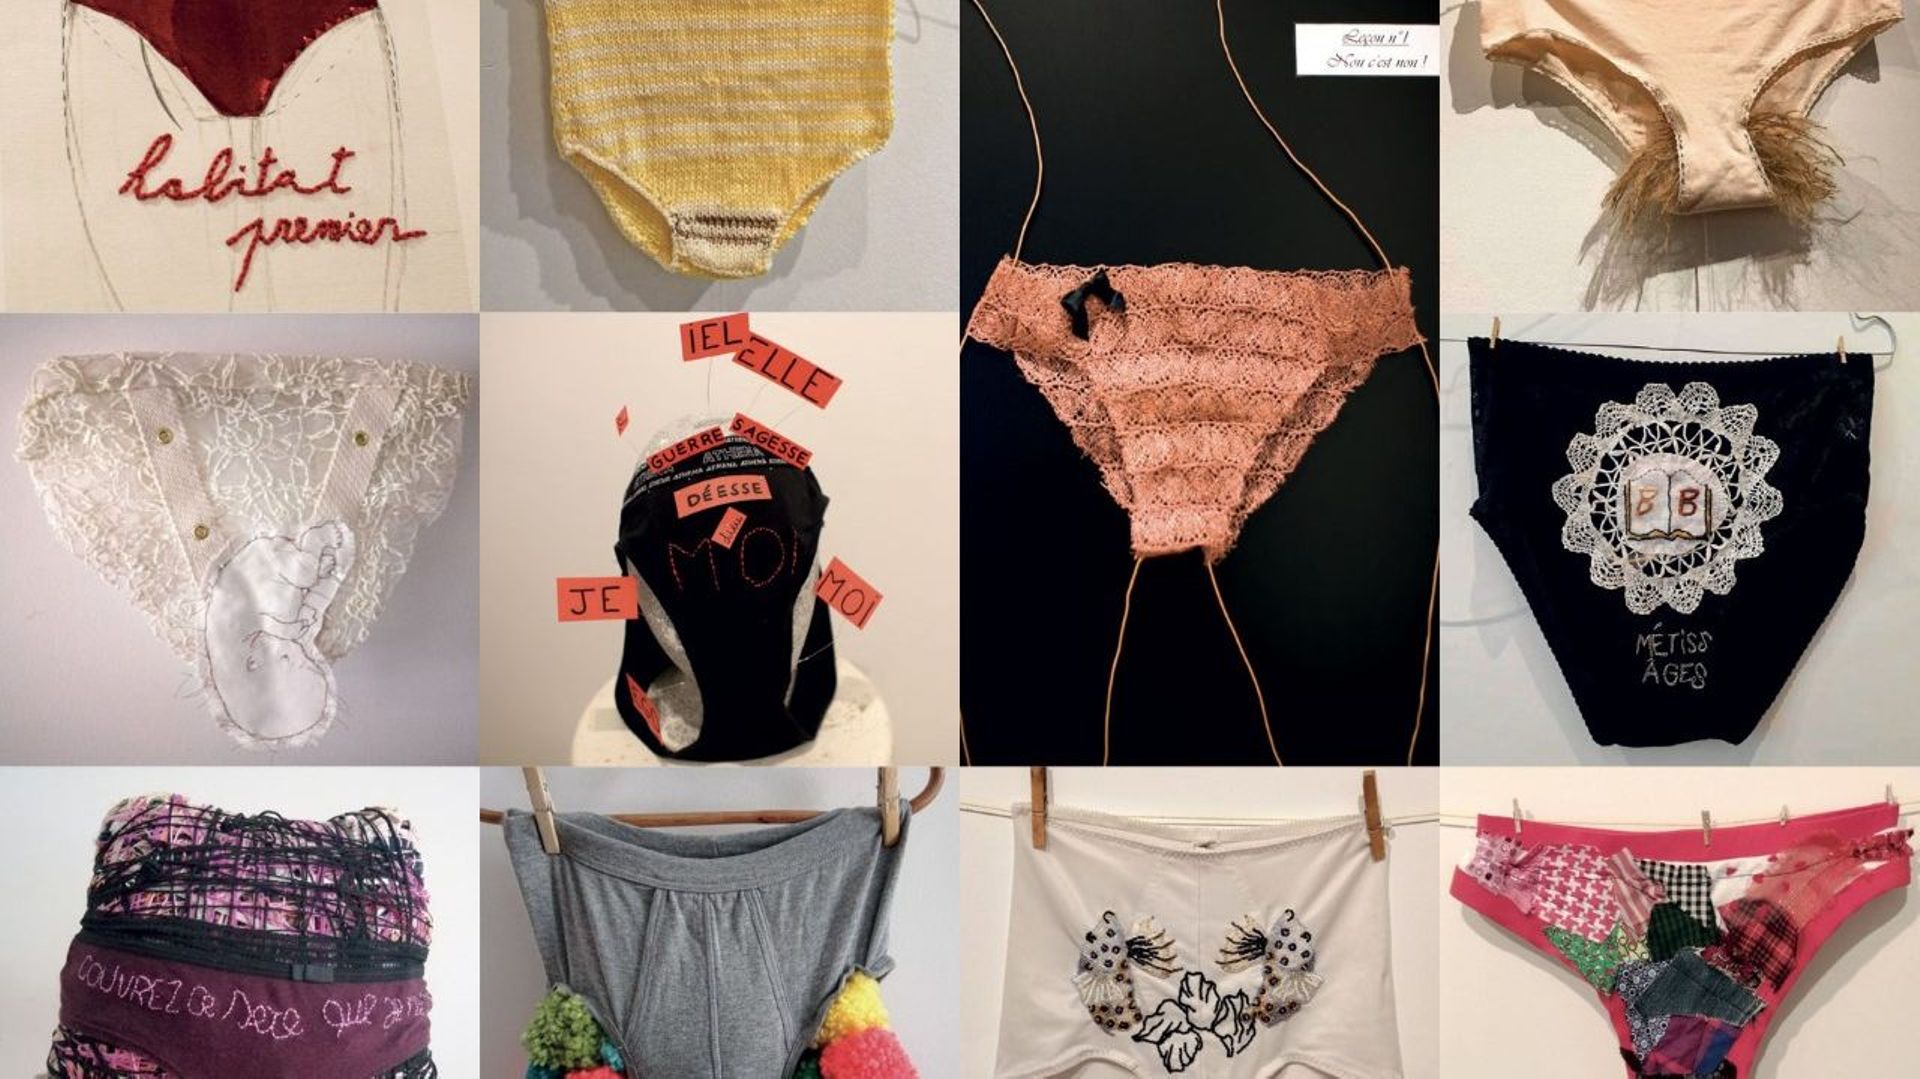 "Les cent culottes": l'expo inclusive qui en a dans le pantalon